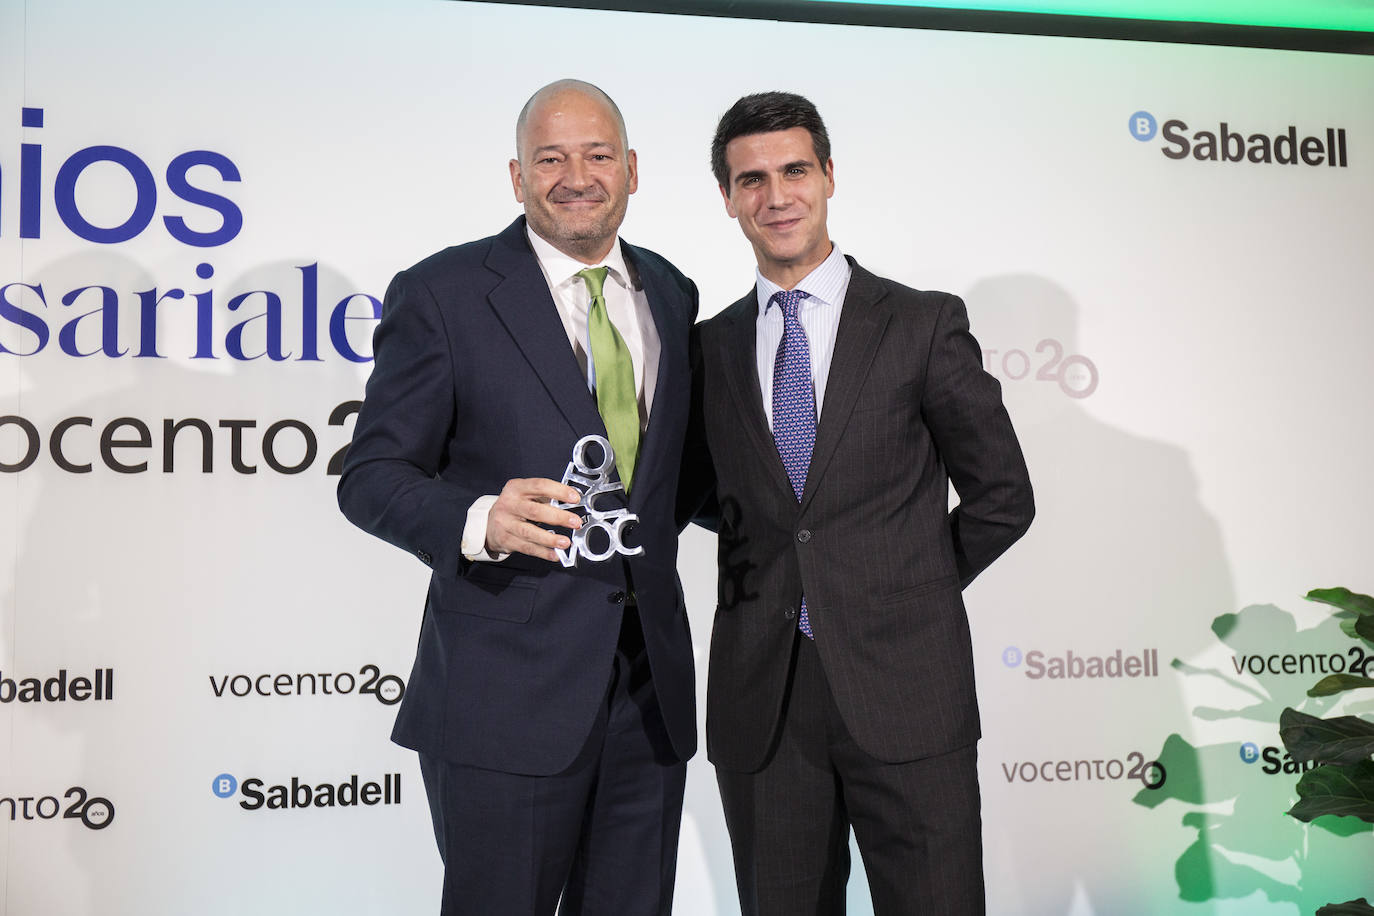 Óscar Lara, director Grandes Empresas de Banco Sabadell, entrega el premio a la Sostenibilidad Ambiental a Antonio Pey, director nacional de Distribución de Heineken España